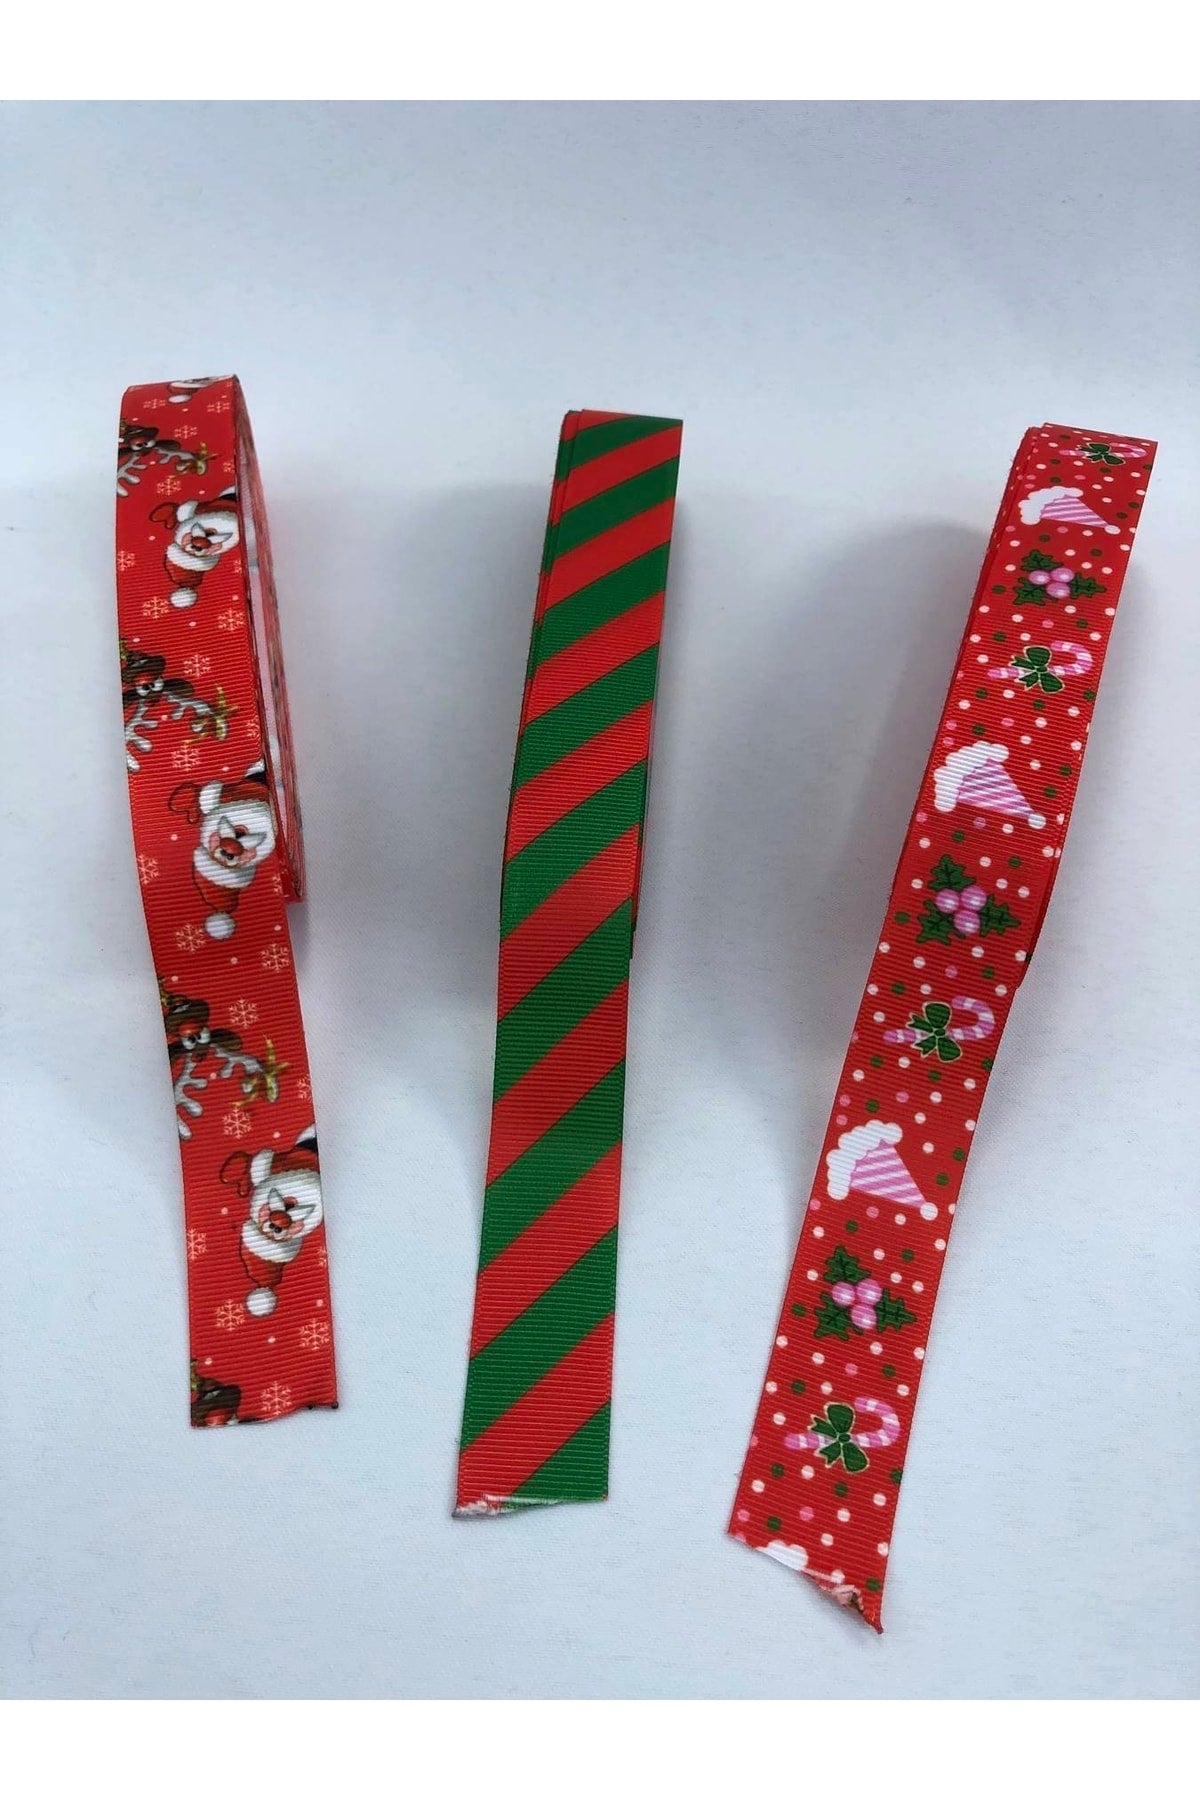 hobbygram Ribbon Set Christmas Themed 31